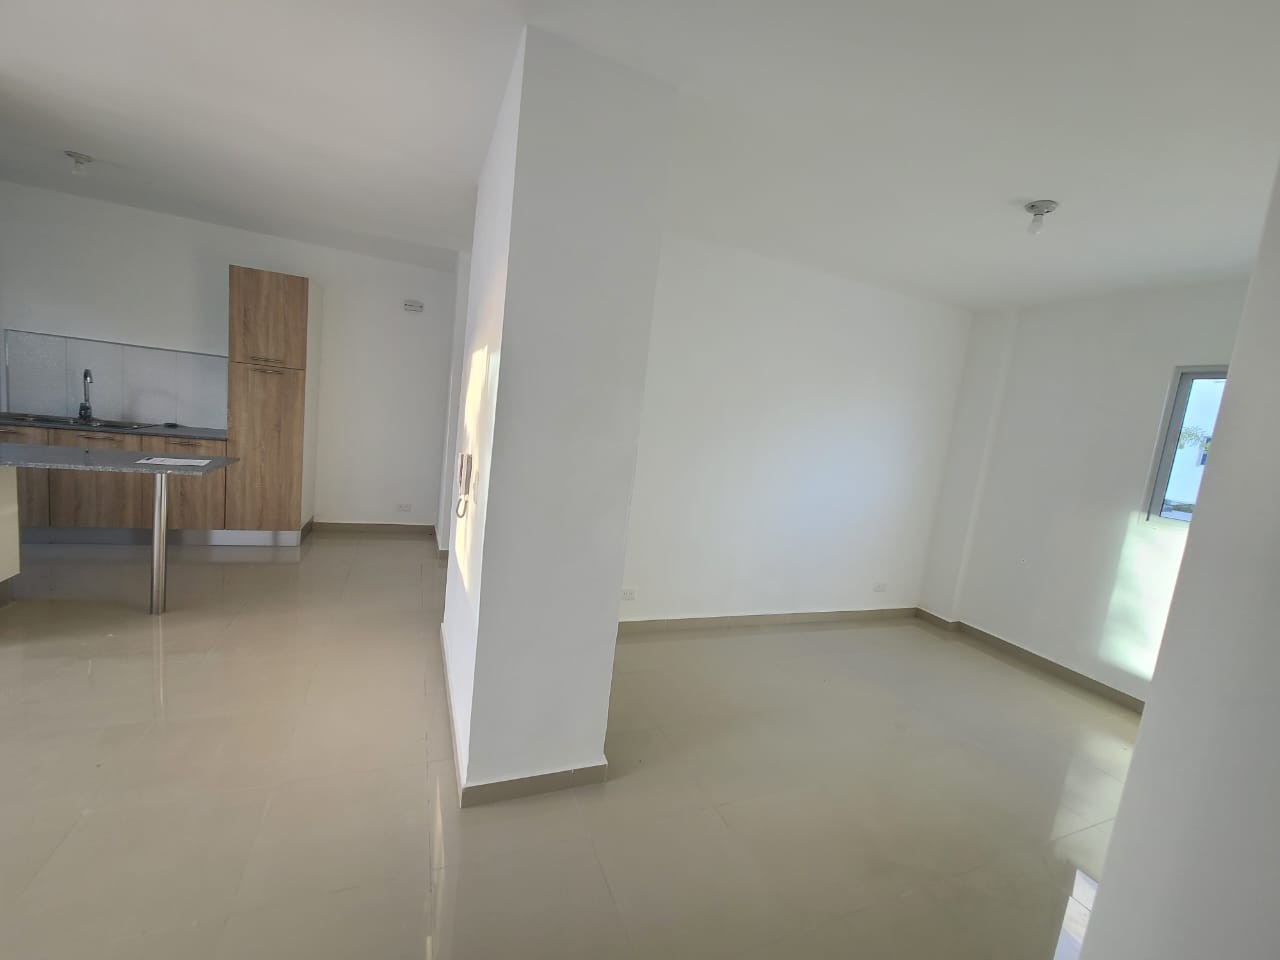 apartamentos - Alquilo Primer Piso En Residencial Trino Park En La Jocobo

CODIGO PD119 7